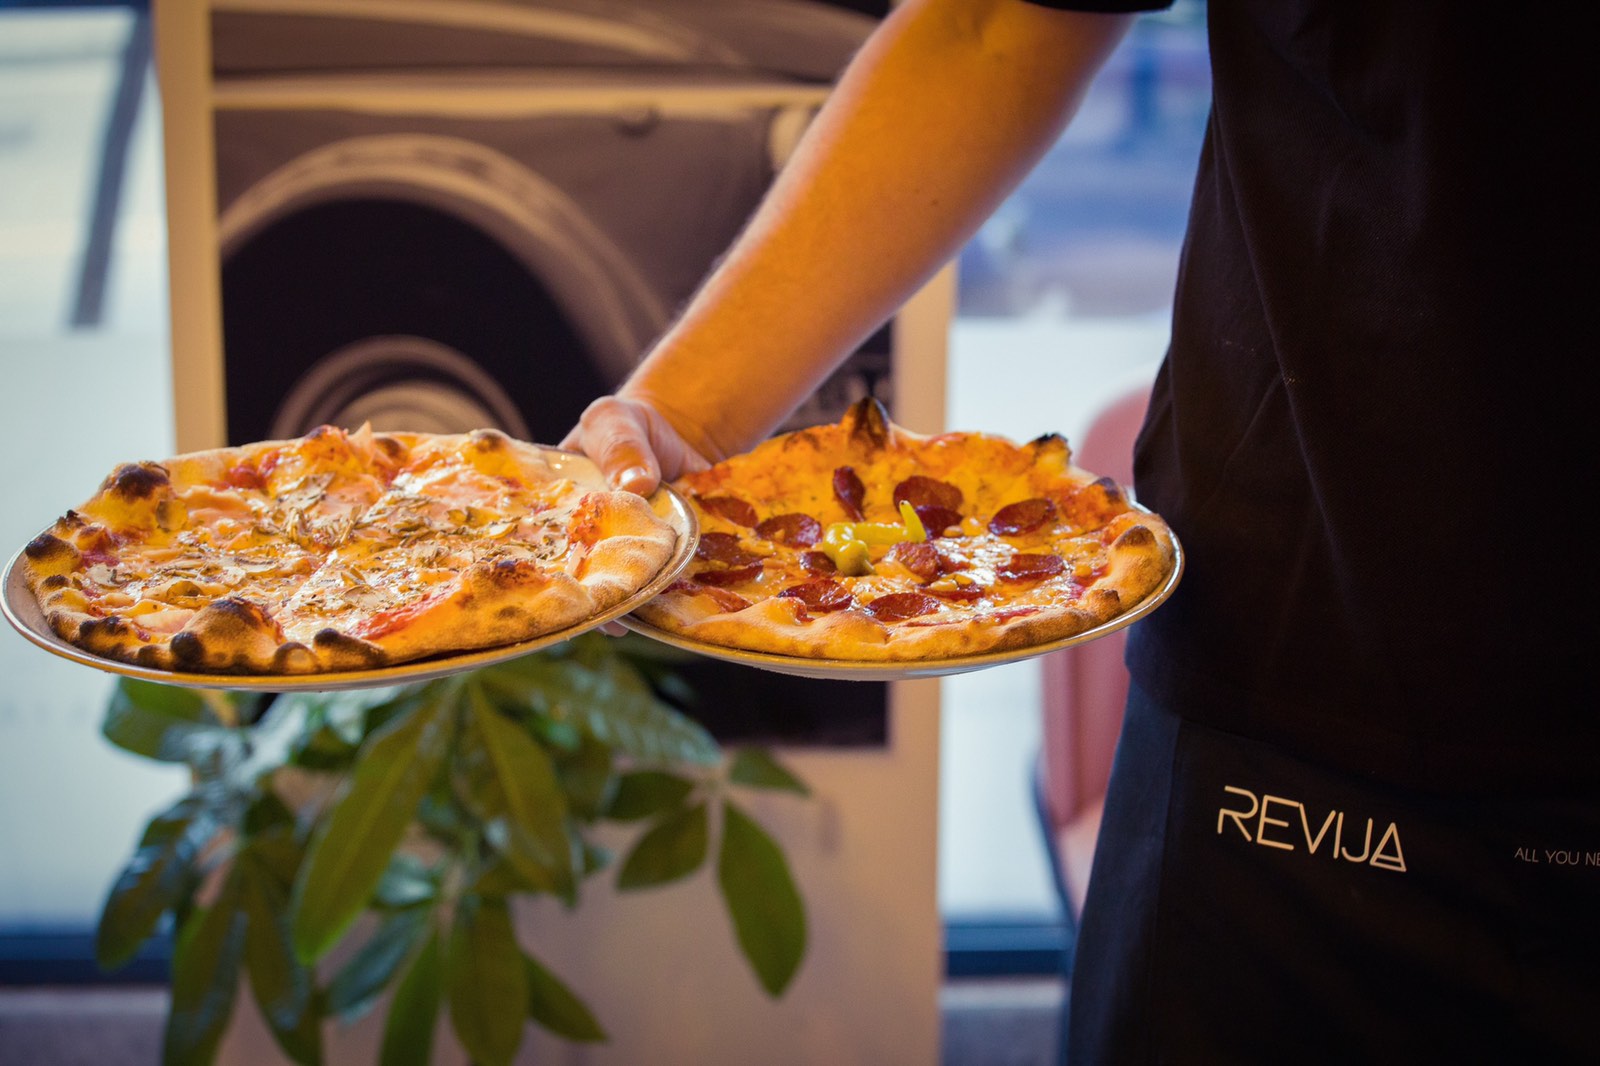 Revija coffe and pizza 2